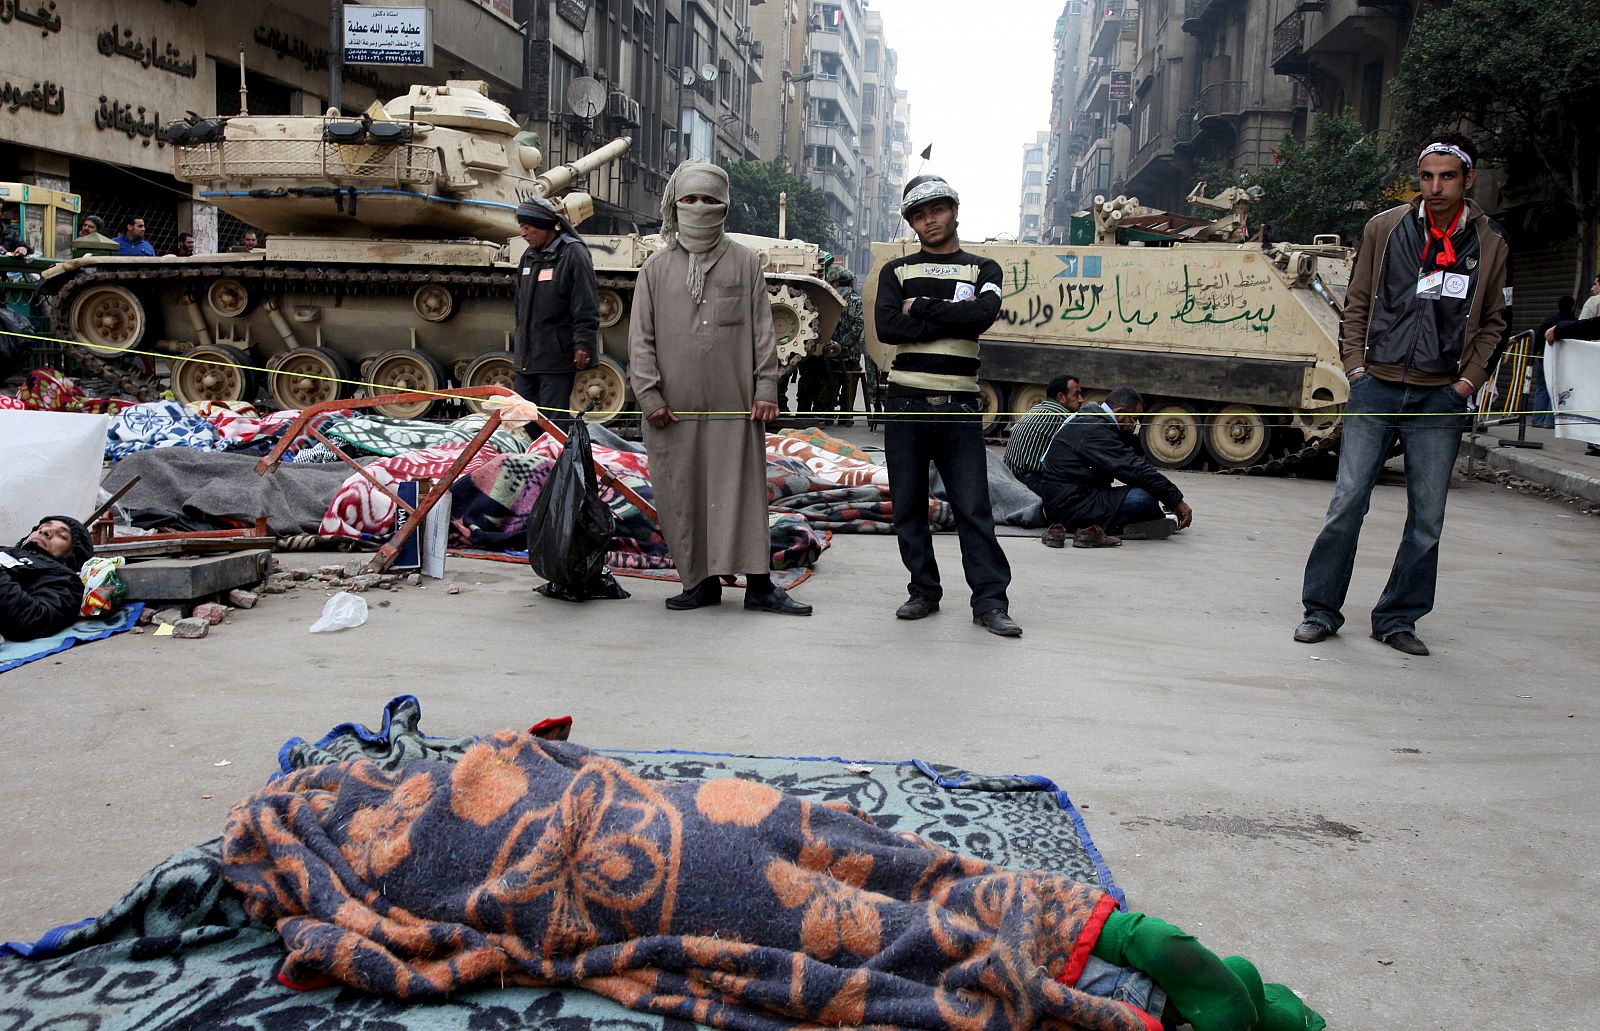 Manifestantes opositores al Gobierno permanecen en un puesto de control montado por civiles cerca de un tanque del ejército mientras otras personas duermen en una calle que conduce a la plaza Tahrir en El Cairo